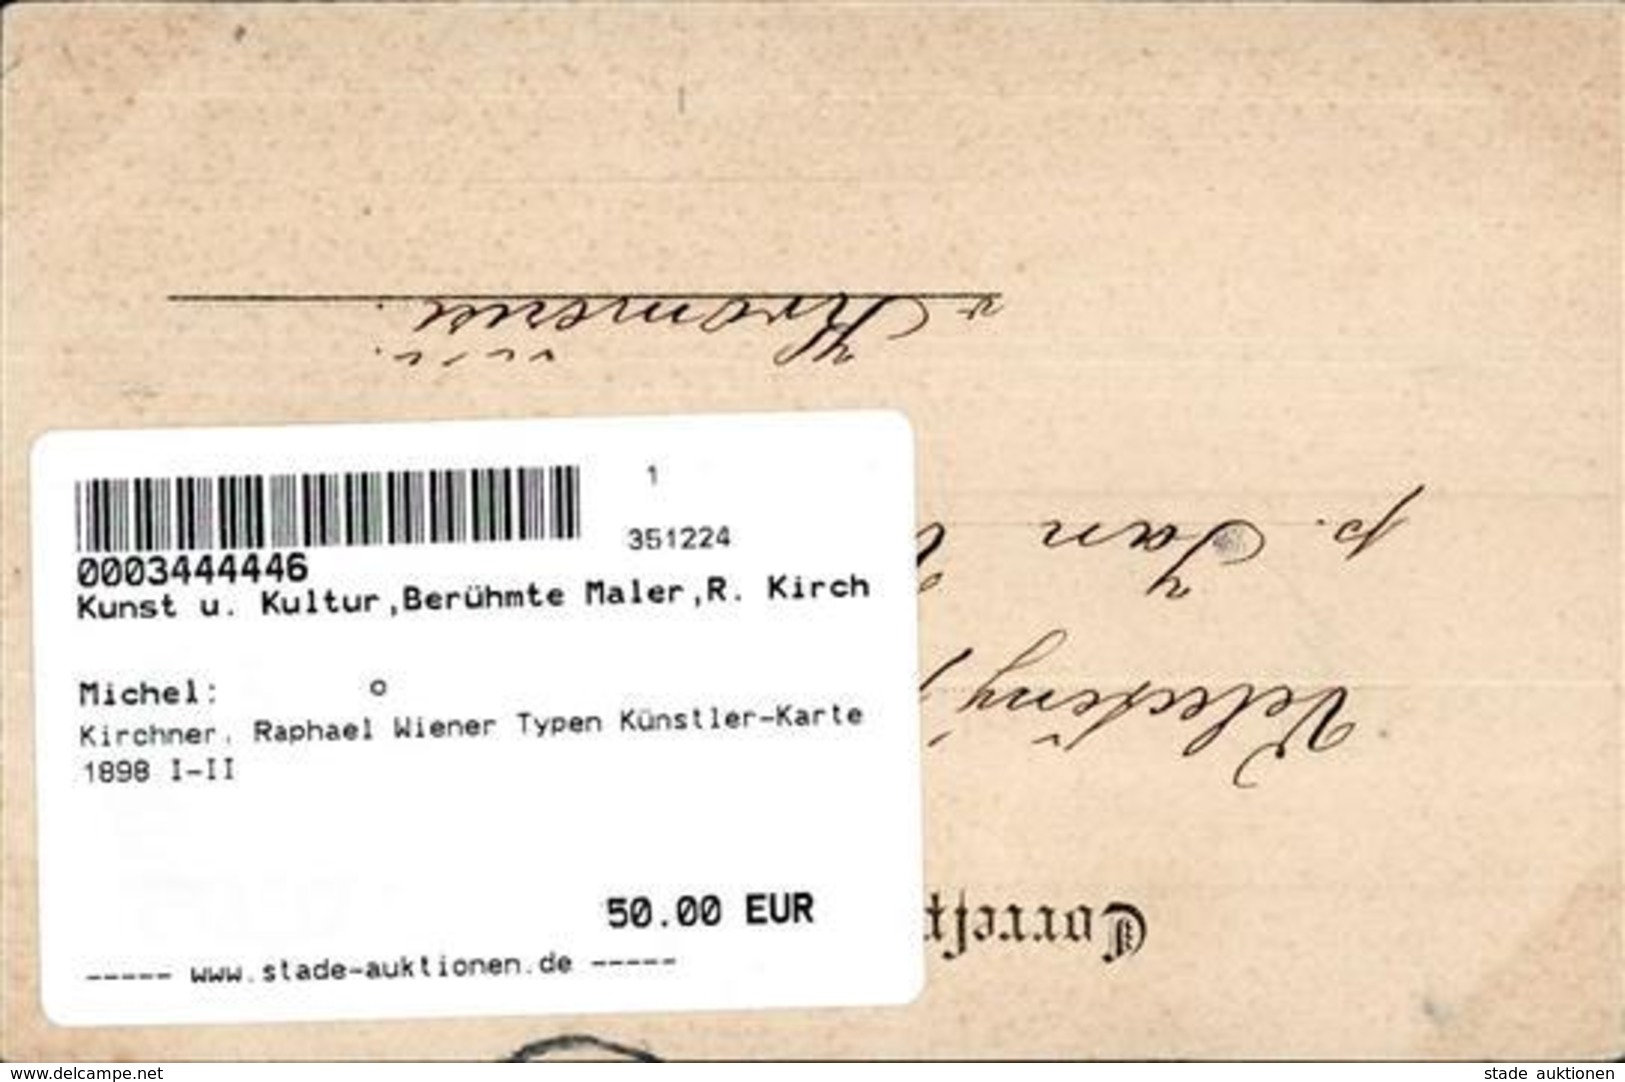 Kirchner, Raphael Wiener Typen Künstler-Karte 1898 I-II - Kirchner, Raphael